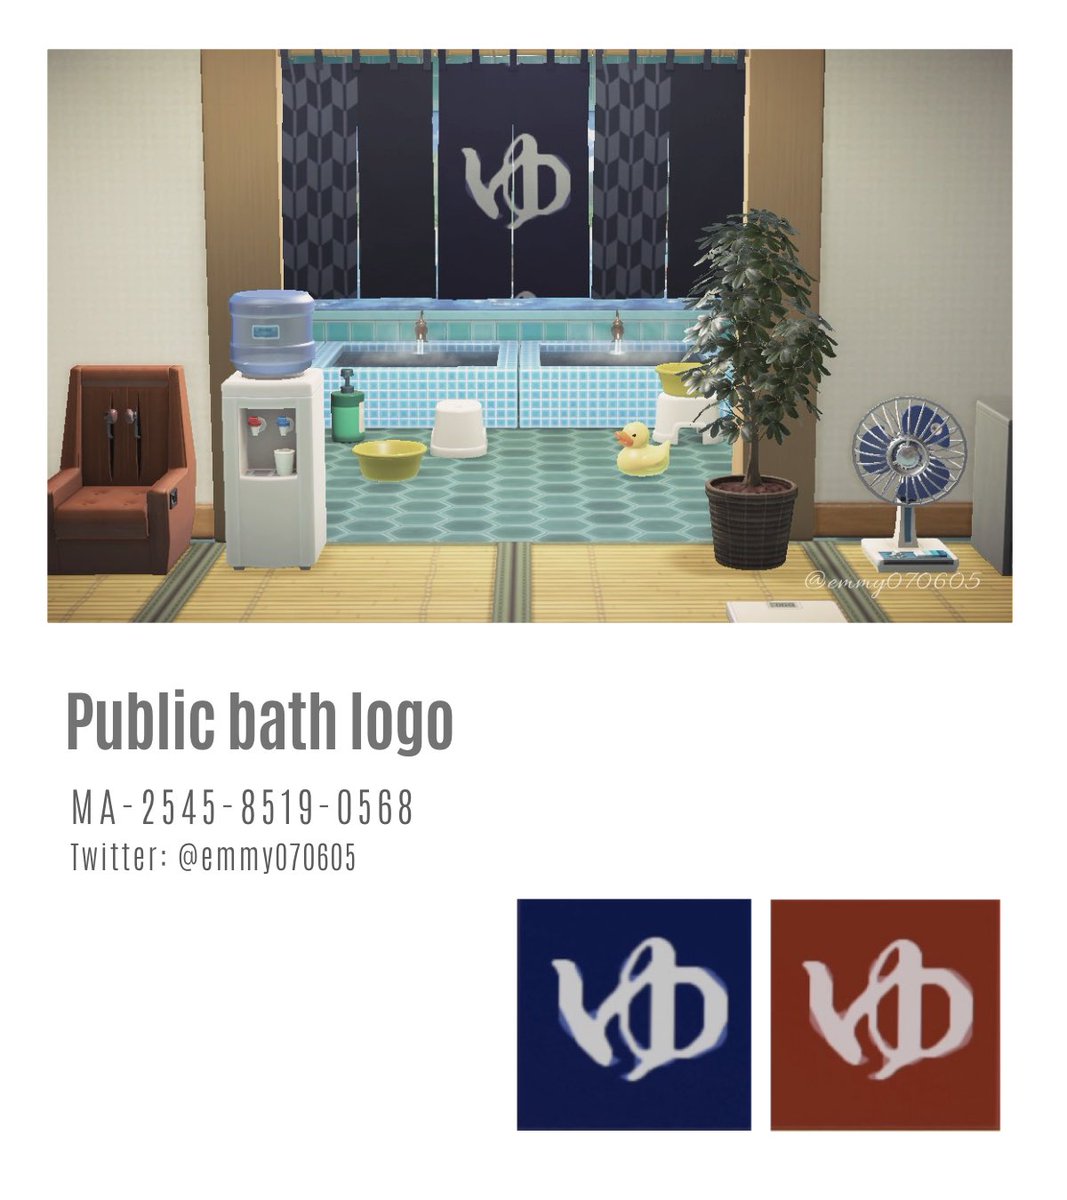 * New design *
* Public bath logo *
* ゆ♨️ *

ただの『ゆ』のマークです😋
せっかくなので、のれんデフォルトの紺＆赤と並べて使える色味にしました。
相変わらず用途なさ過ぎですが、よかったら何かで遊んでみてね。

#どうぶつの森 #ACNH #ACNHDesign #マイデザイン #マイデザ配布